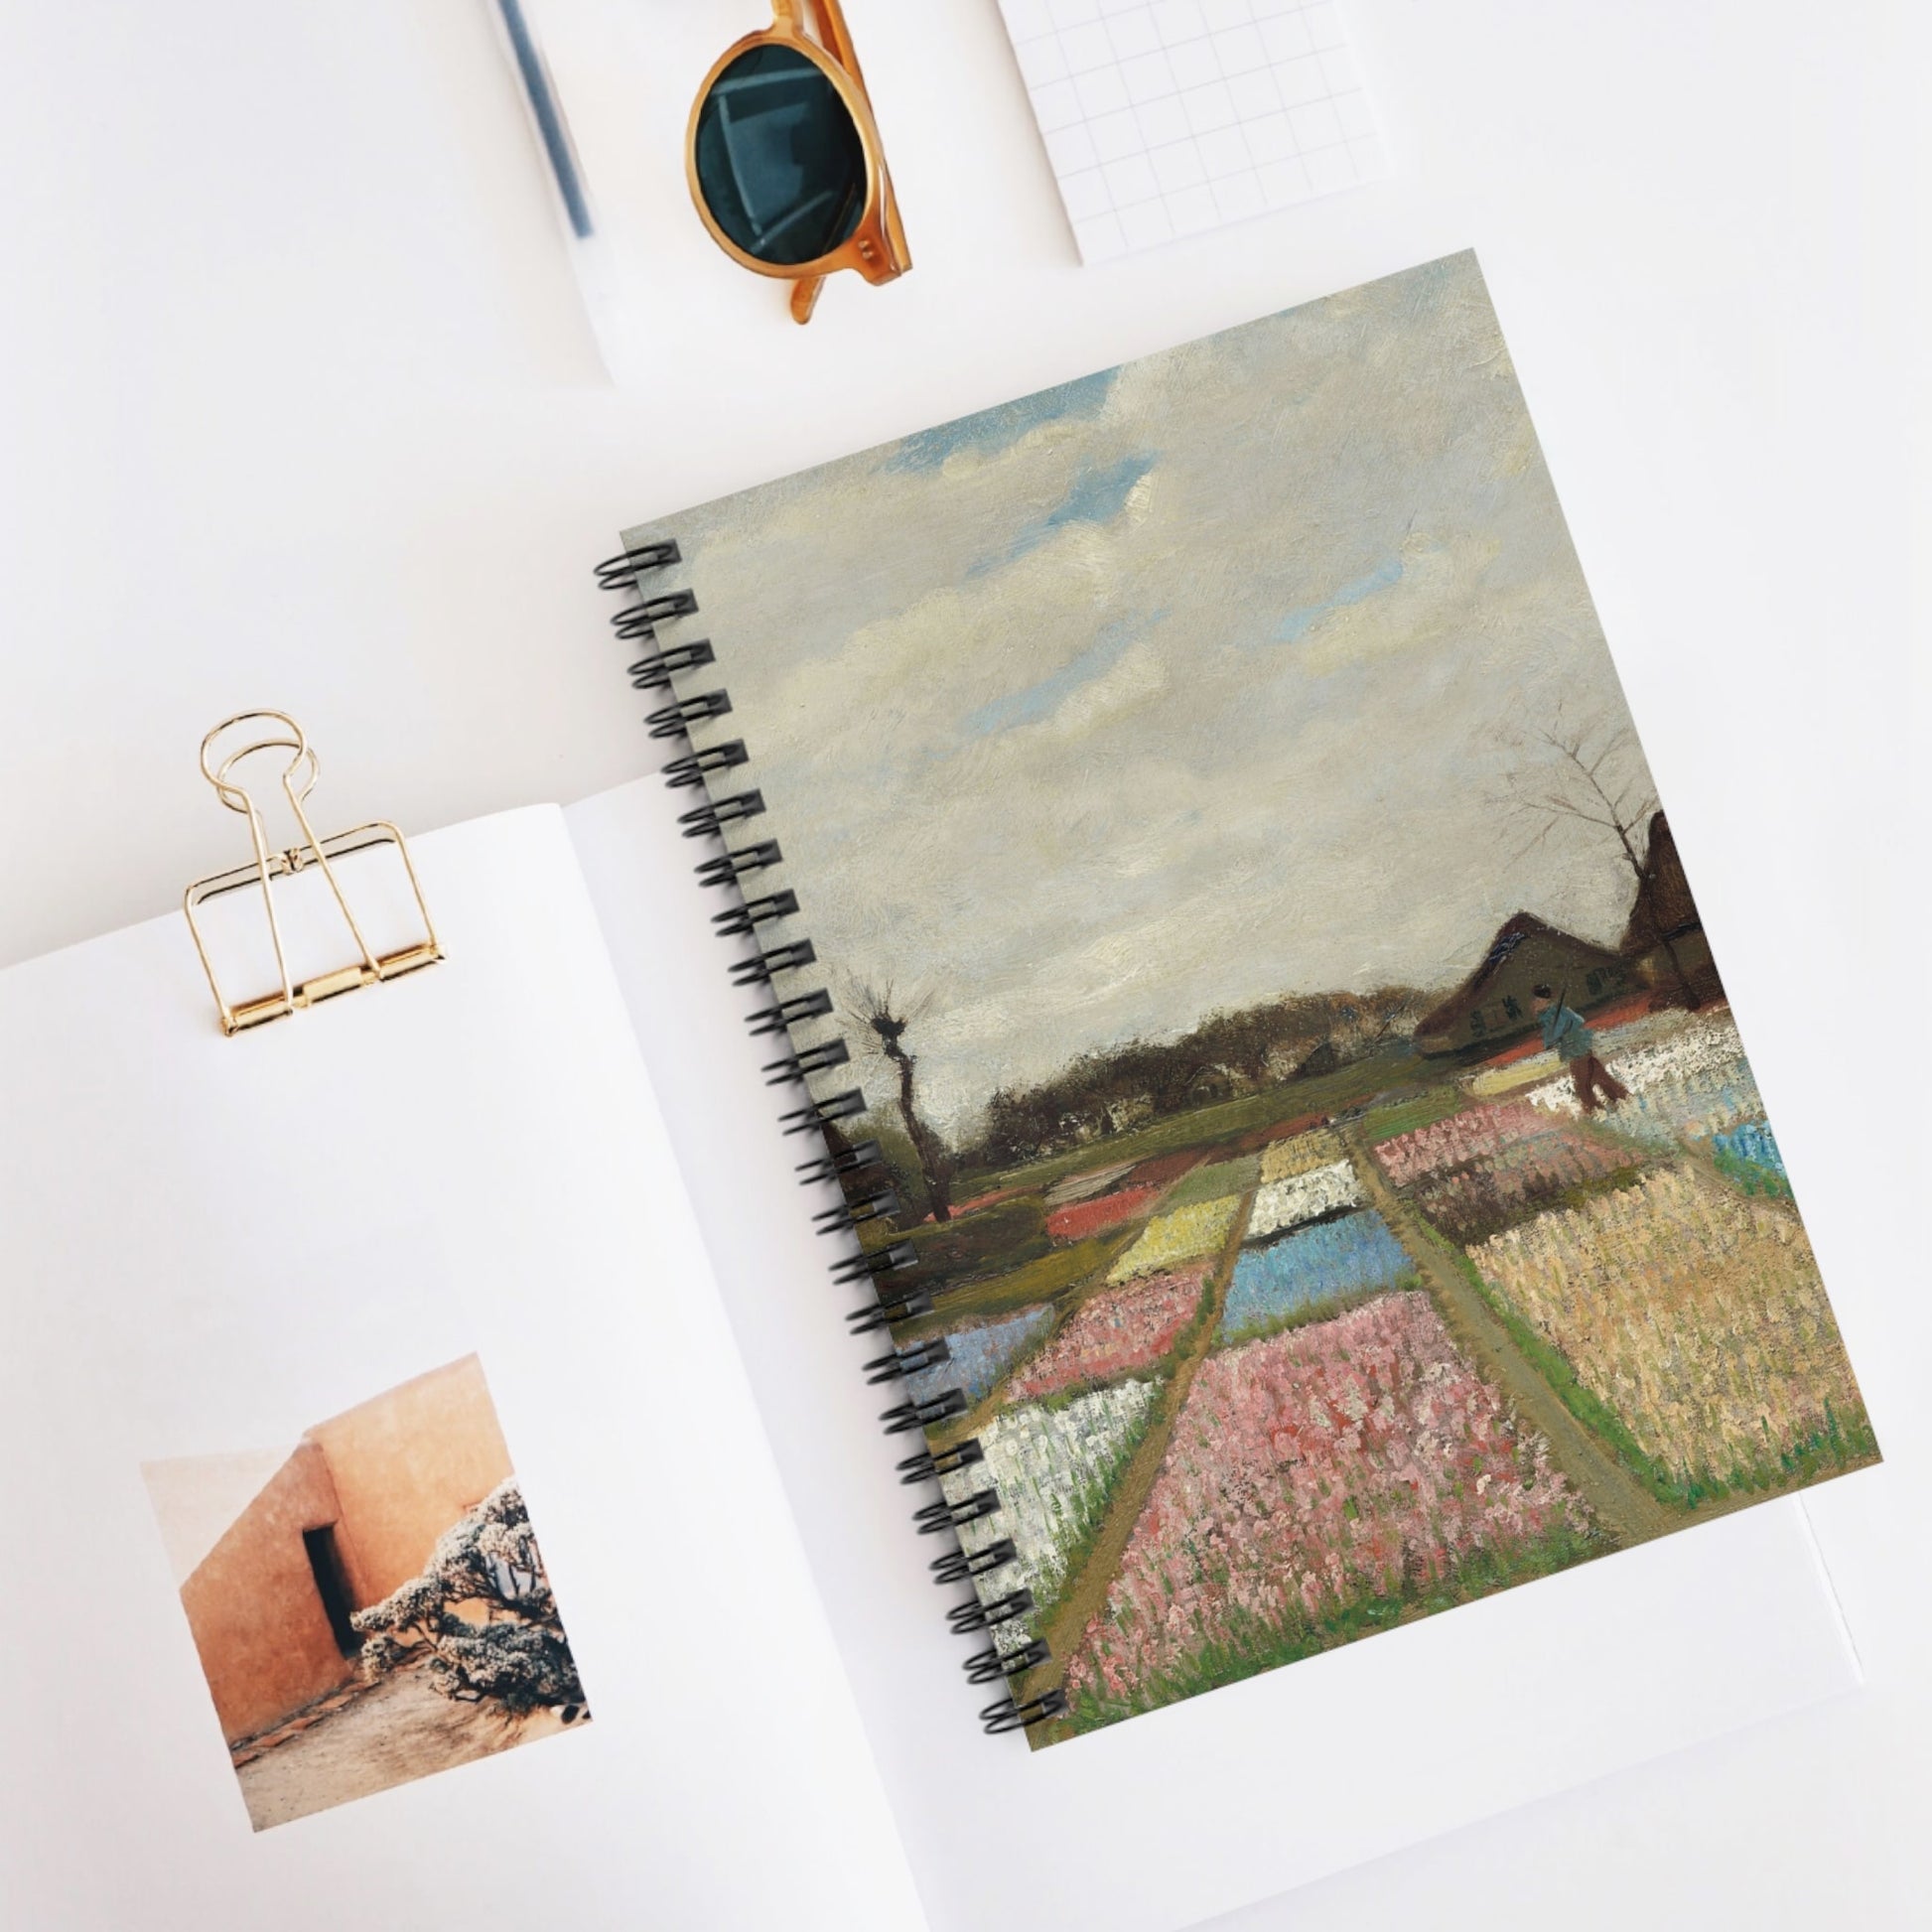 Floral Landscape Spiral Notebook Displayed on Desk